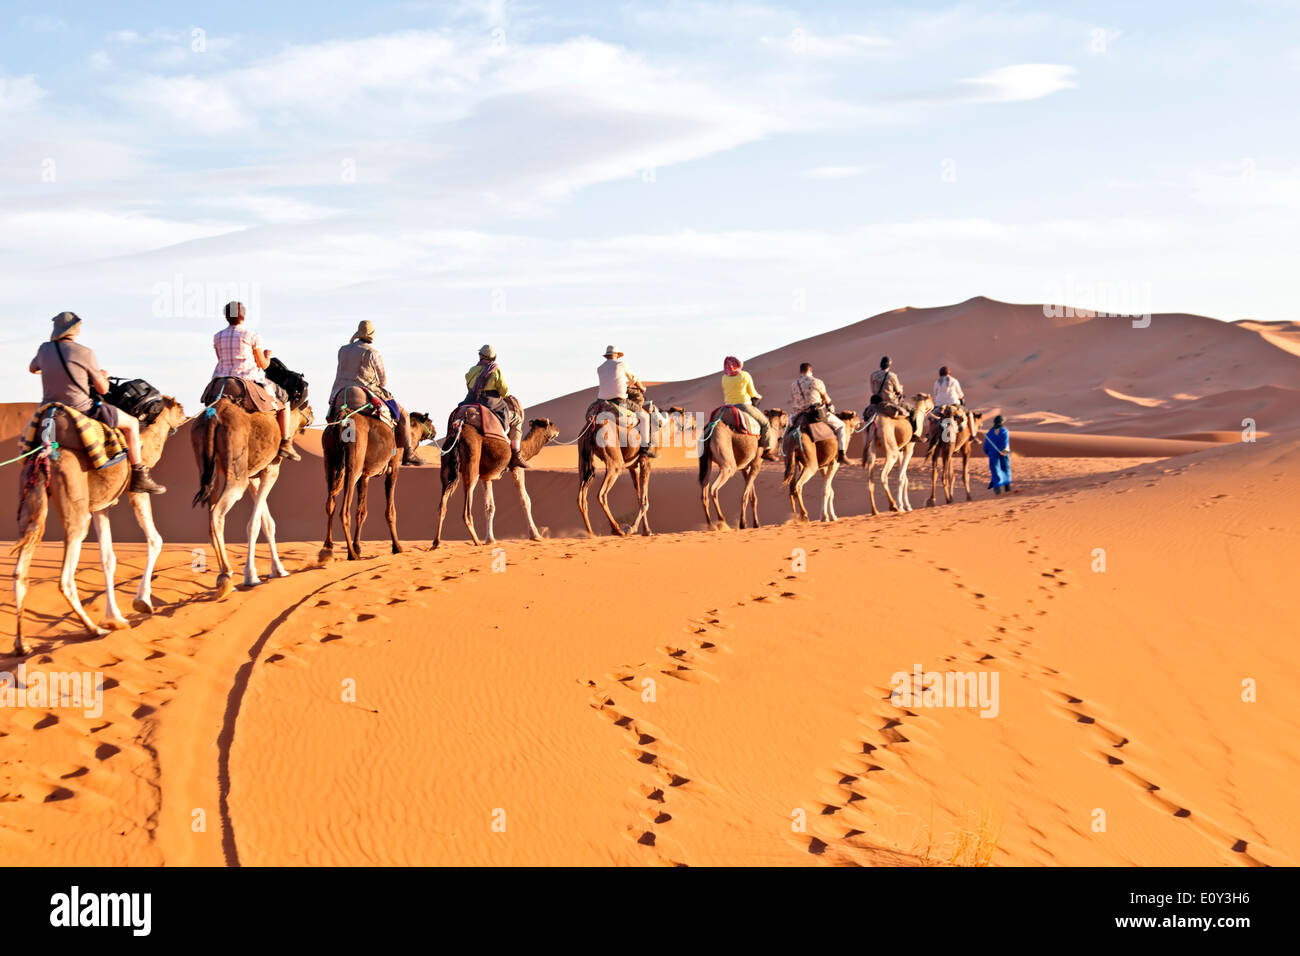 Camel caravan going through the sand dunes in the Sahara Desert, Morocco. Stock Photo